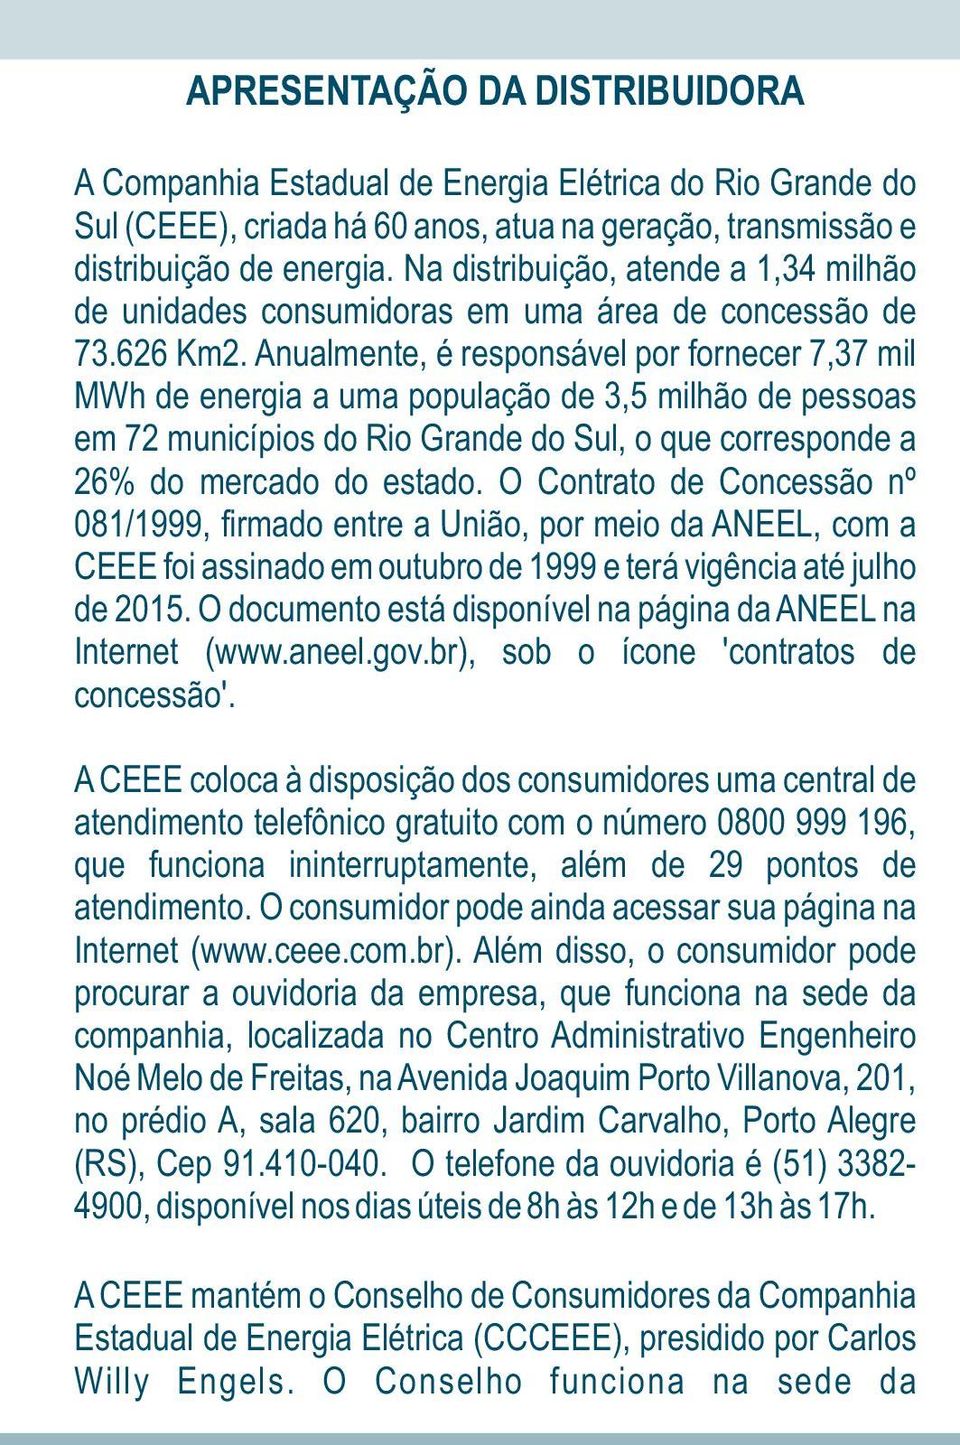 Anualmente, é responsável por fornecer 7,37 mil MWh de energia a uma população de 3,5 milhão de pessoas em 72 municípios do Rio Grande do Sul, o que corresponde a 26% do mercado do estado.